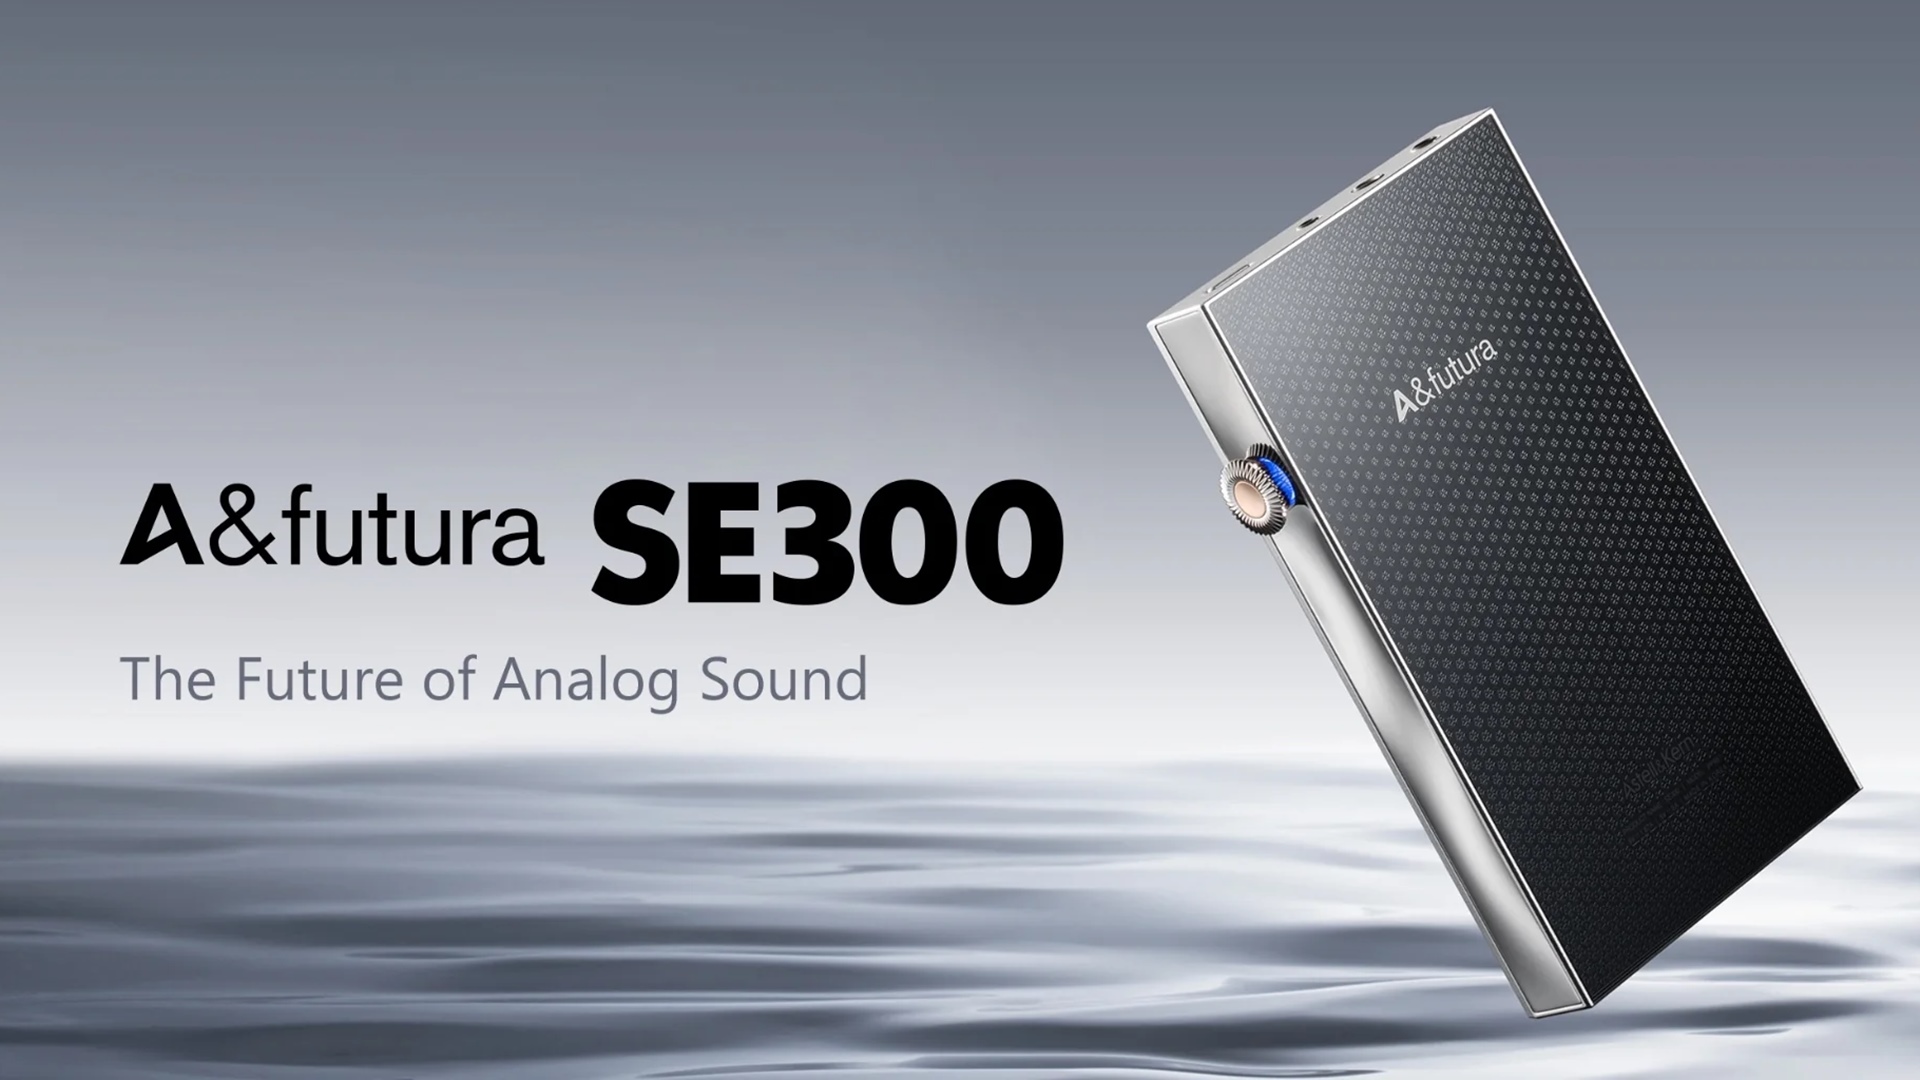 Astell & Kern ra mắt máy nghe nhạc A&futura SE300 và tai nghe Vision Ears Aura, giá từ $1.900